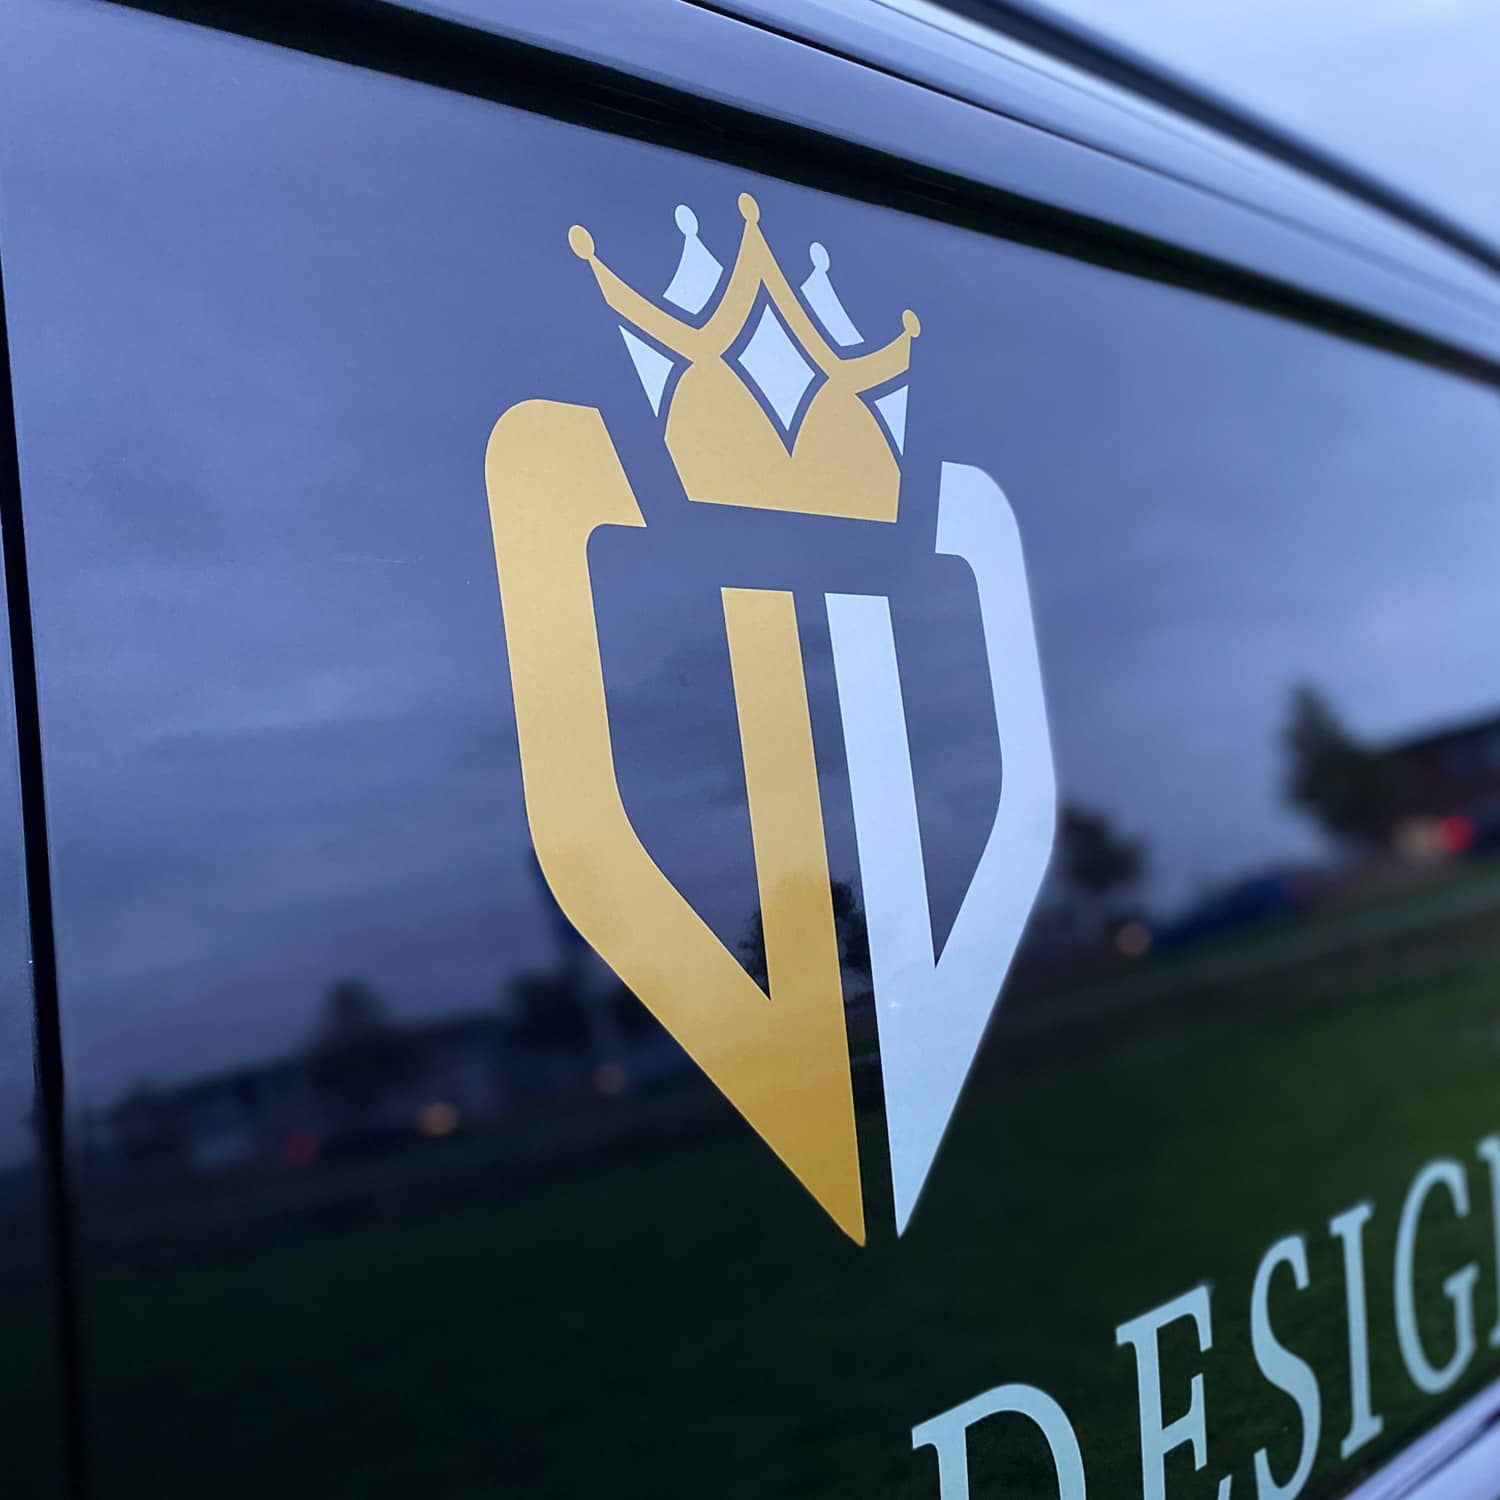 Dutch Design logo bus